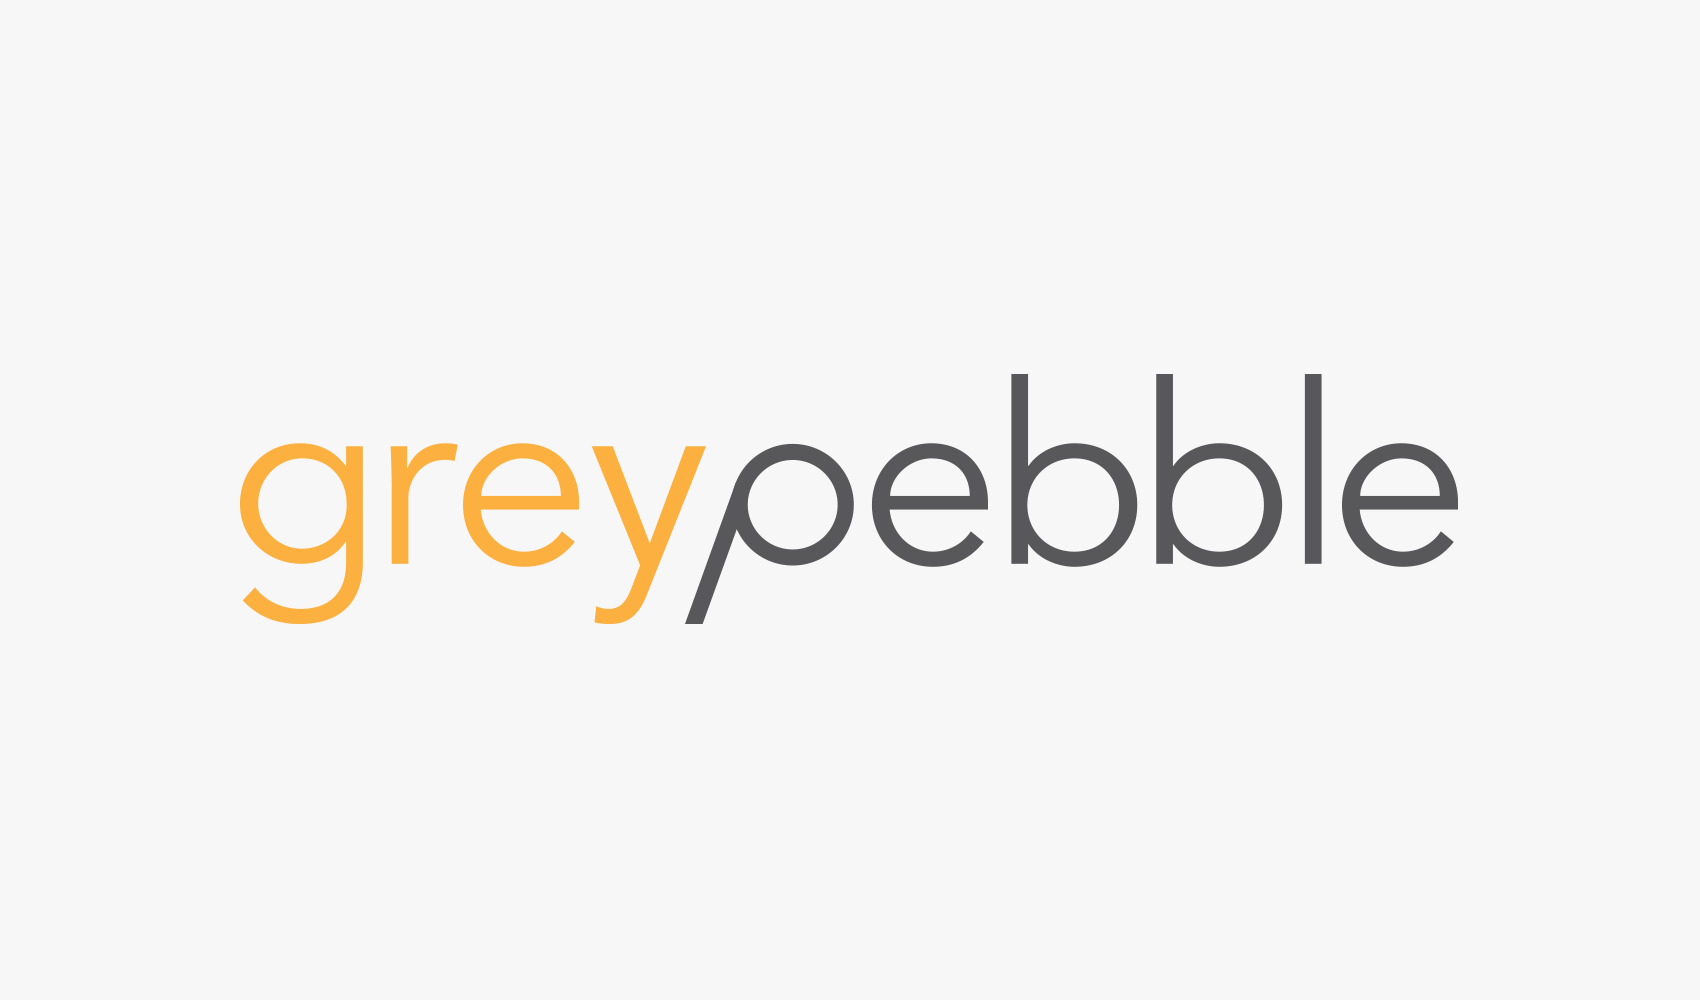 Jobs at Pebble